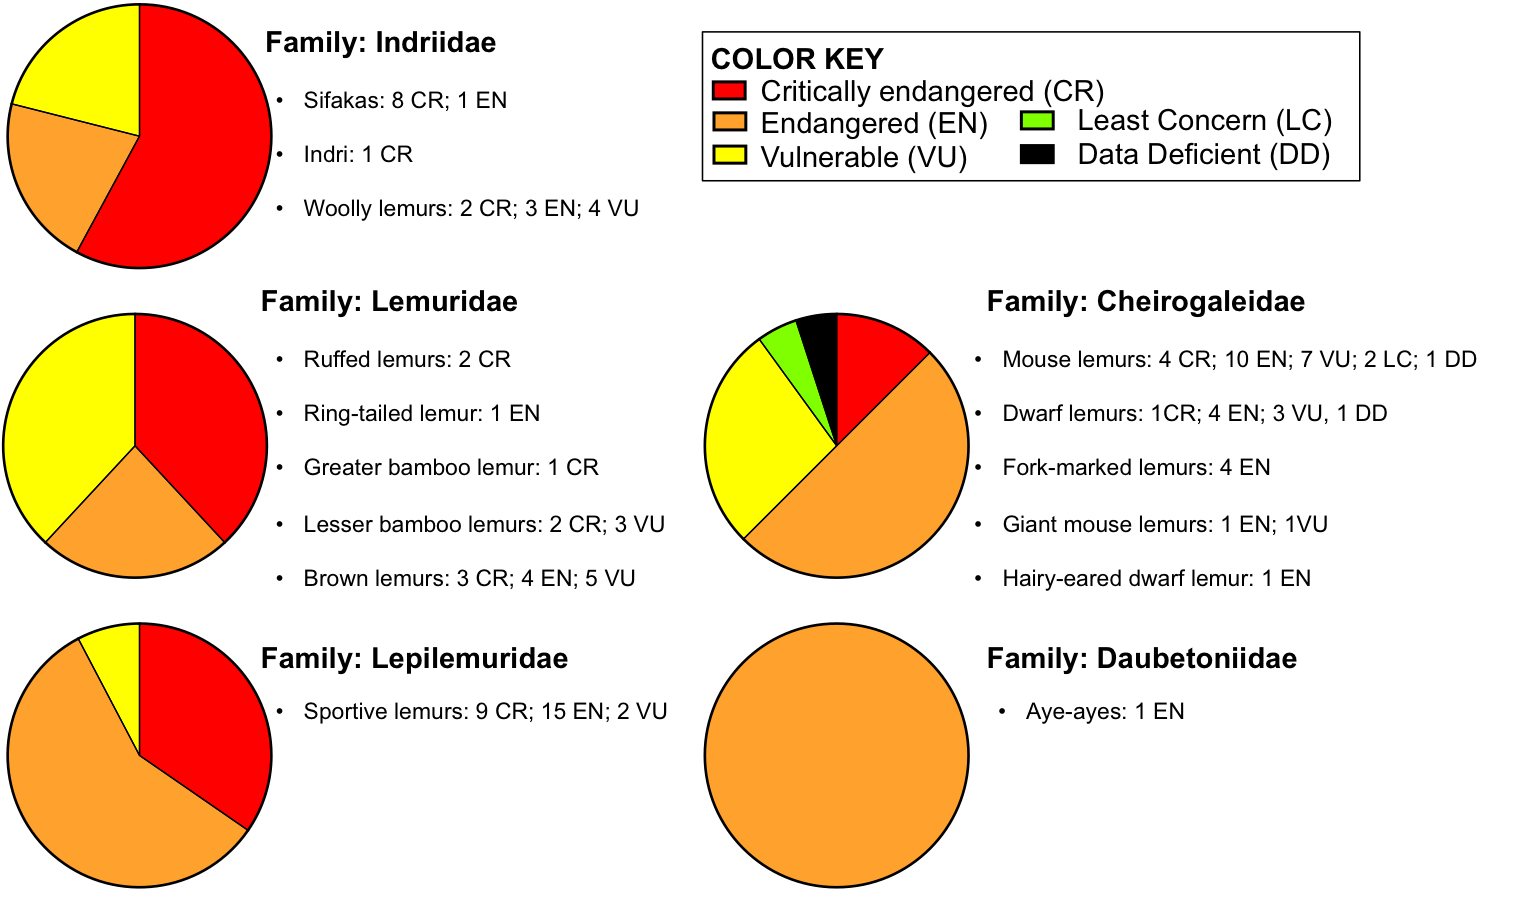 Charts of endangerment status of lemur species